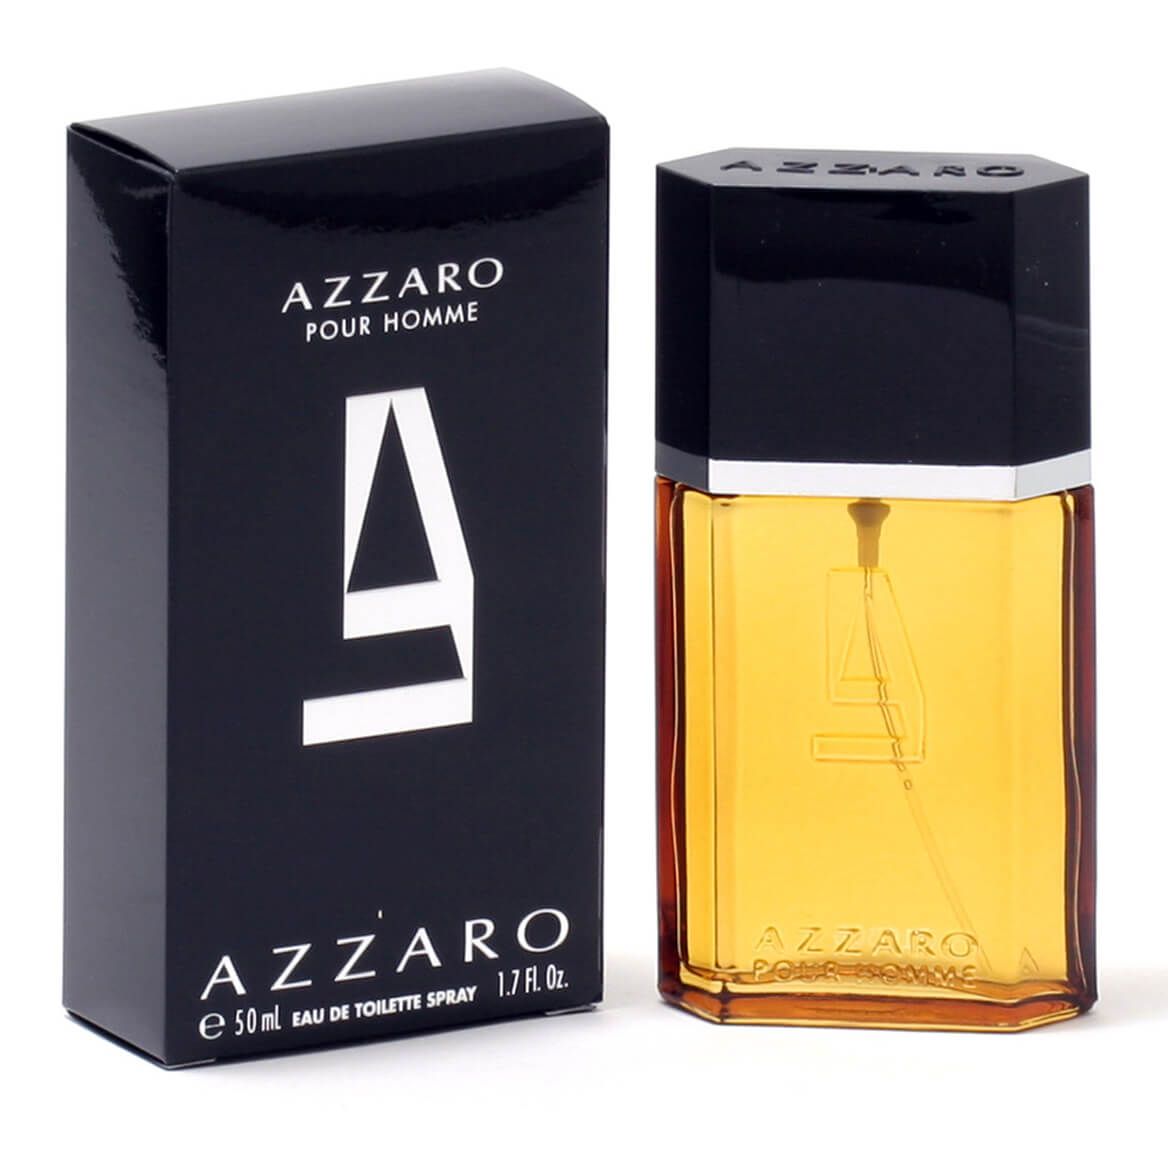 Azzaro for Men EDT, 1.7 oz. + '-' + 366791